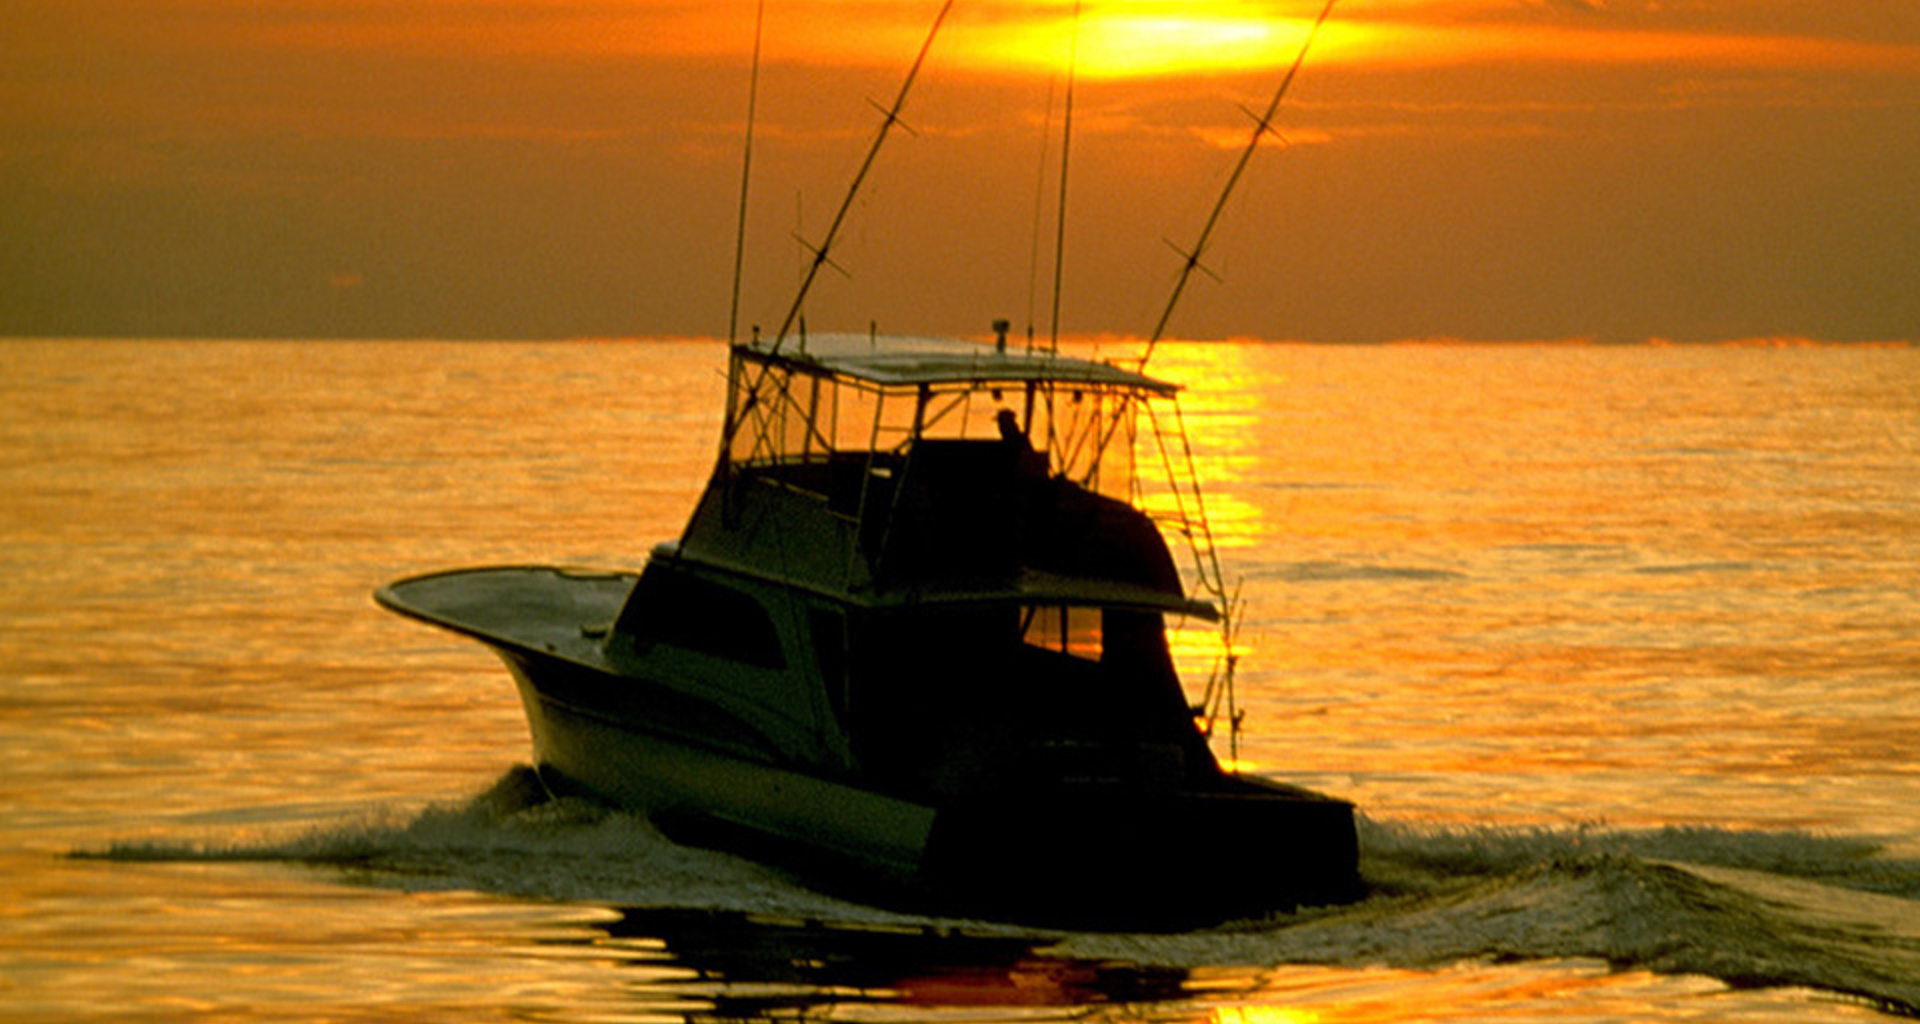 Things To Do Charter Fishing Box4b Charter Boat Sunrise 960X600 206K